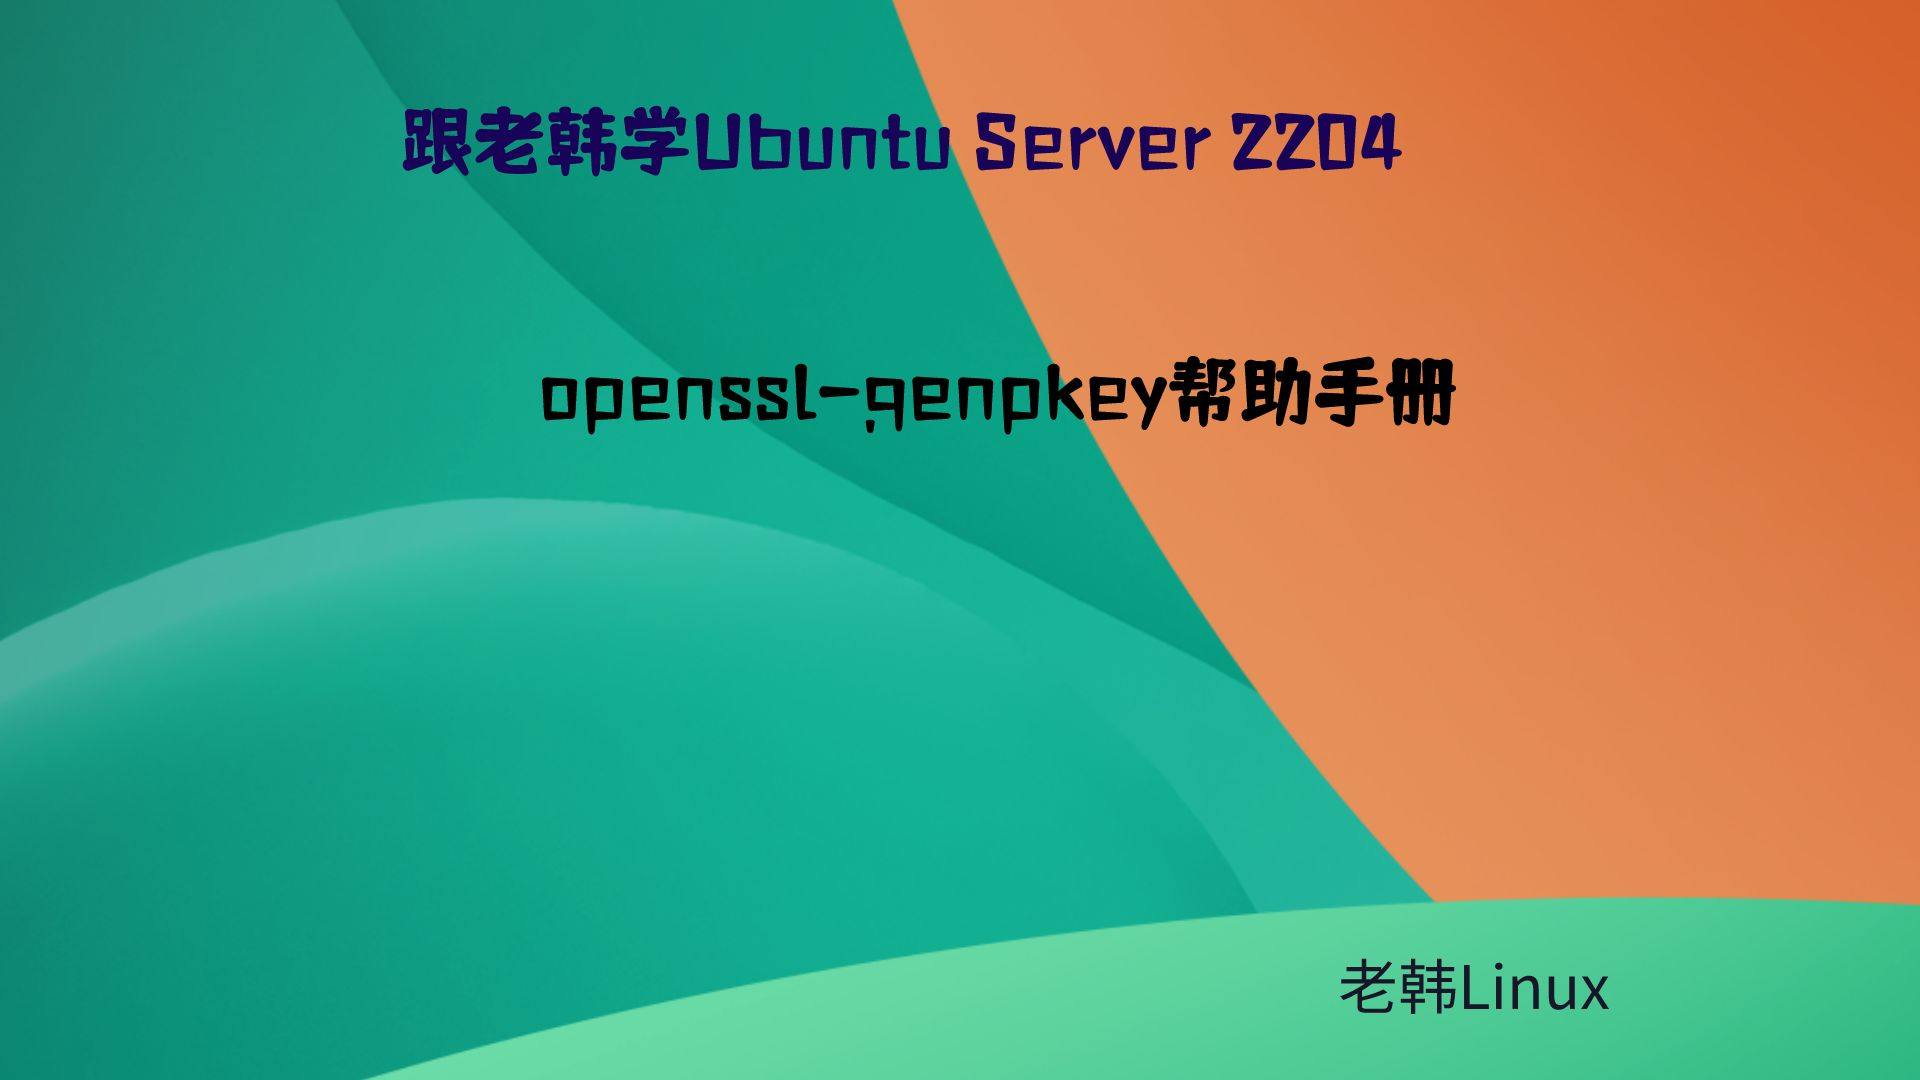 跟老韩学Ubuntu Server 2204-openssl-genpkey帮助手册